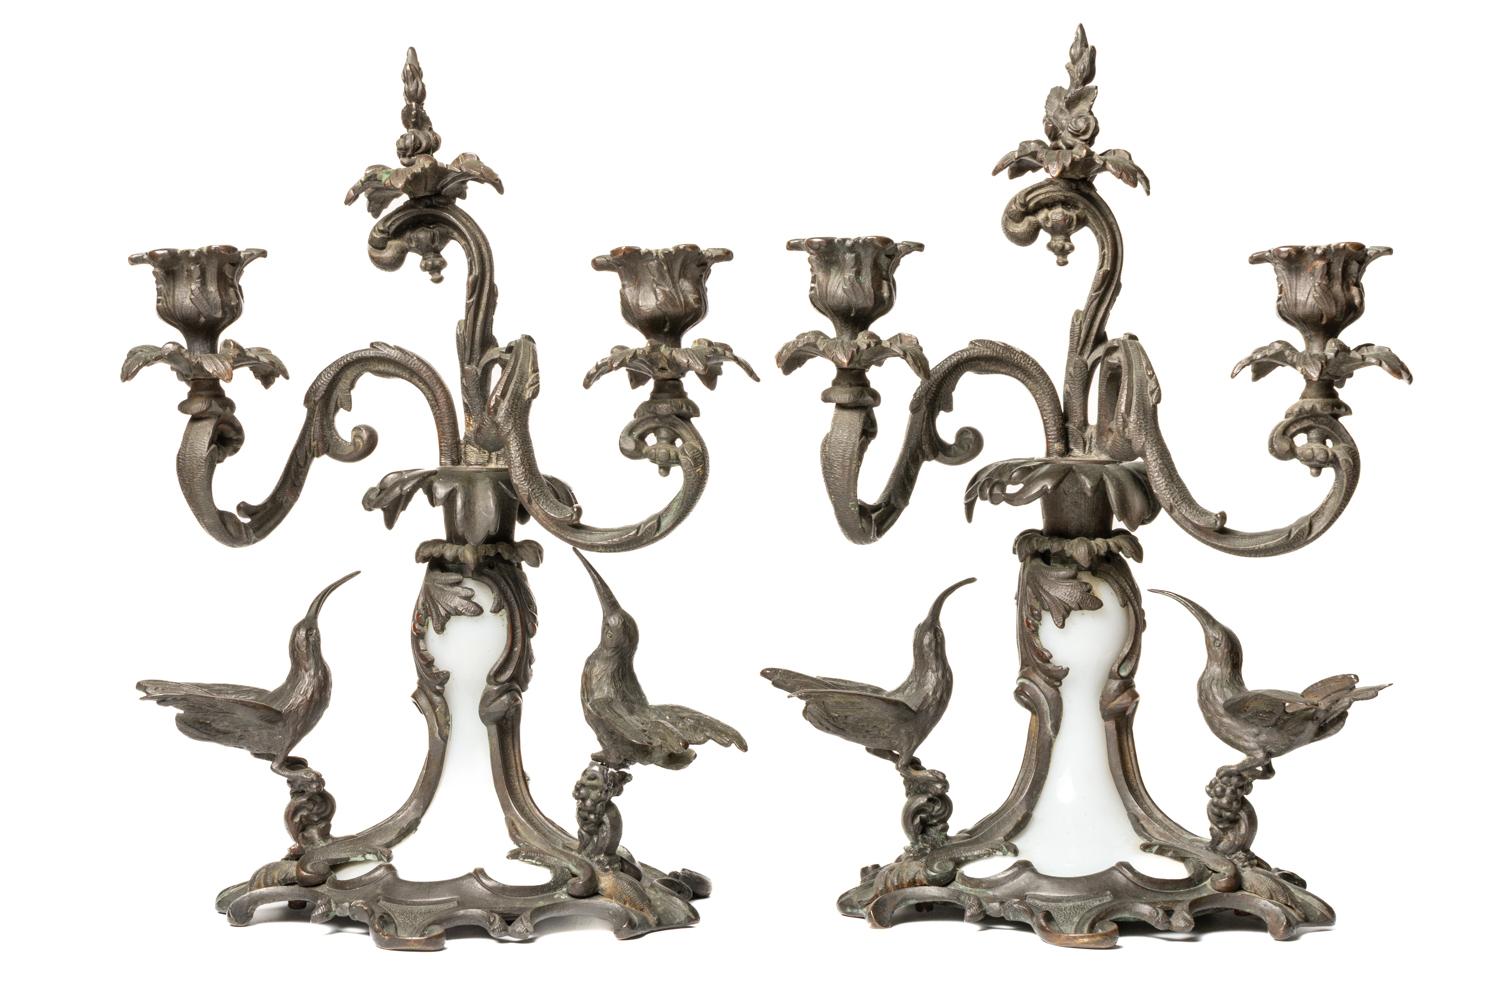 Cette extraordinaire et très rare paire de chandeliers à deux branches en bronze et verre opalin provient de France et a été fabriquée vers 1880. Chaque bougeoir est orné d'un décor détaillé de feuillage en bronze et de deux colibris à la base.